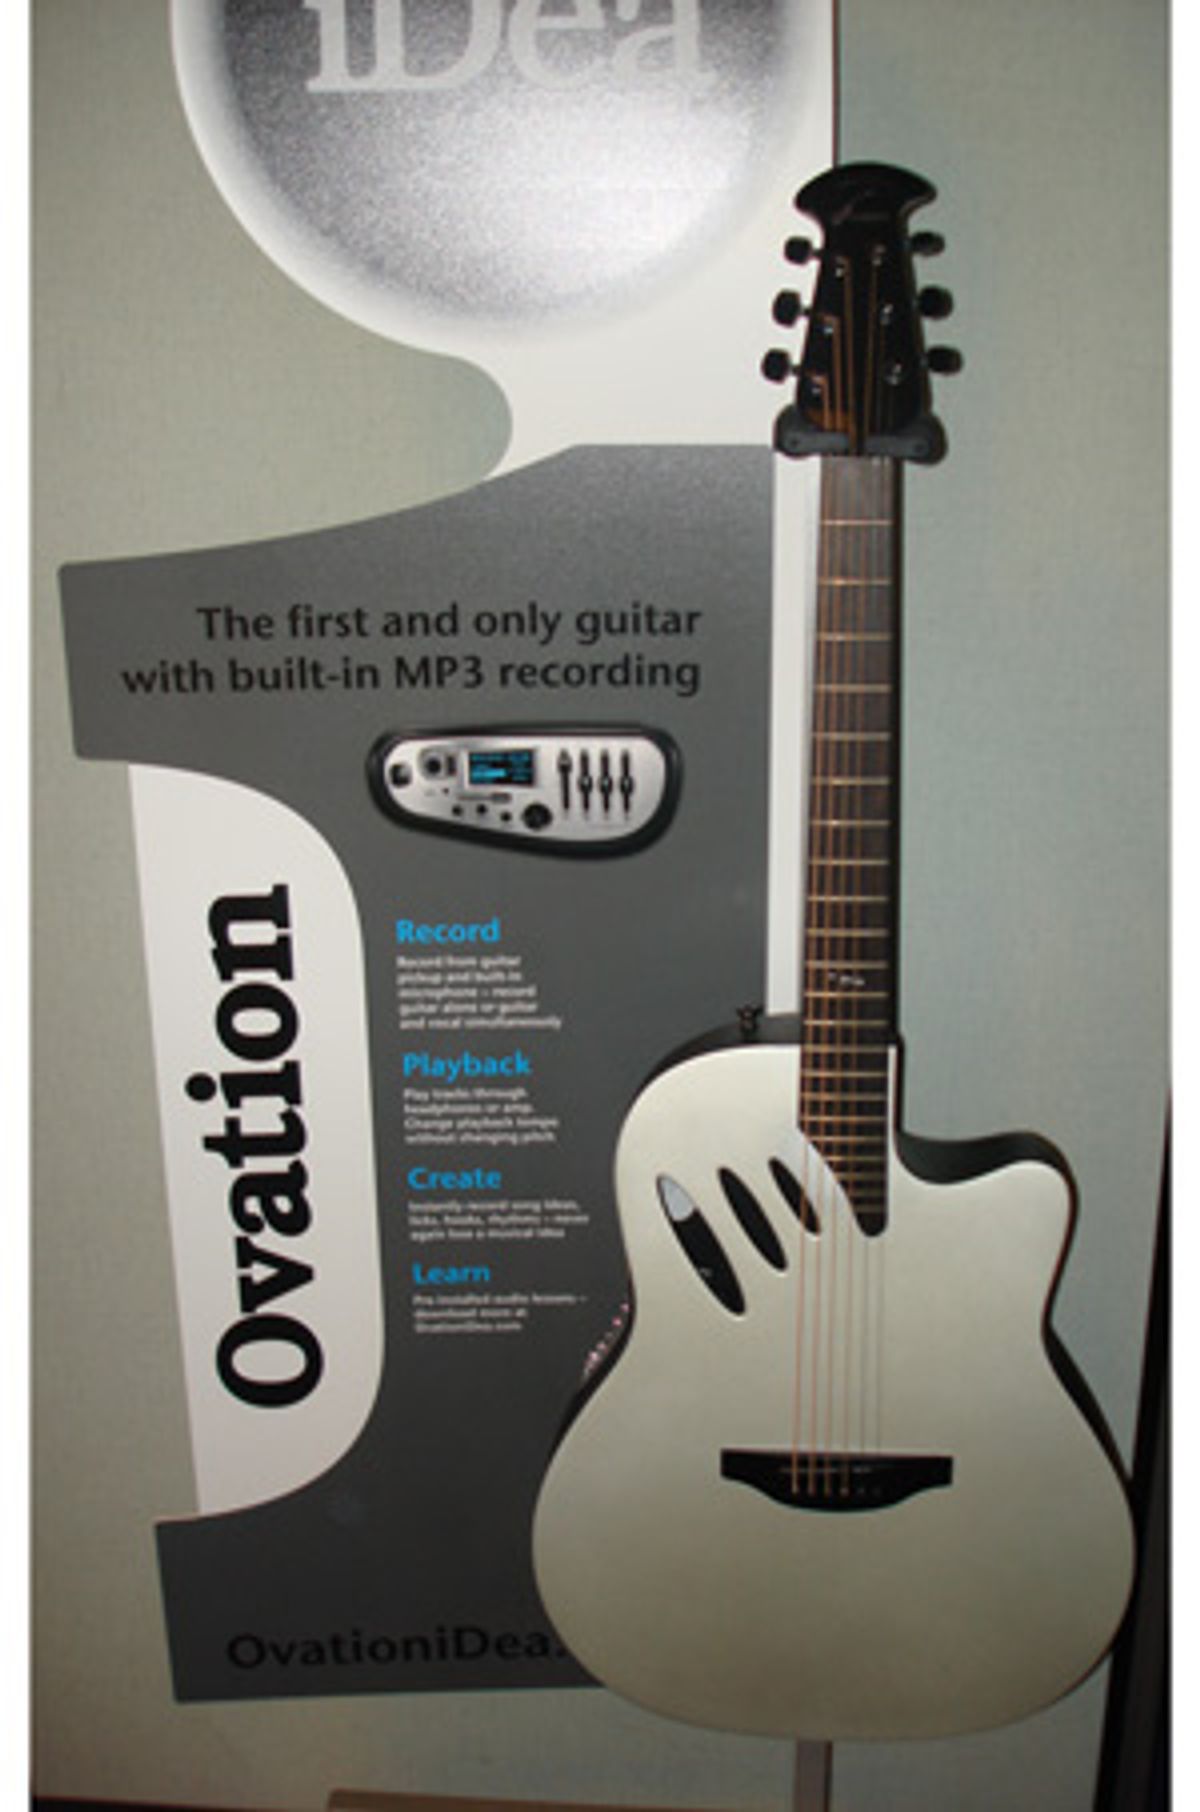 Ovation Releases iDea Guitar